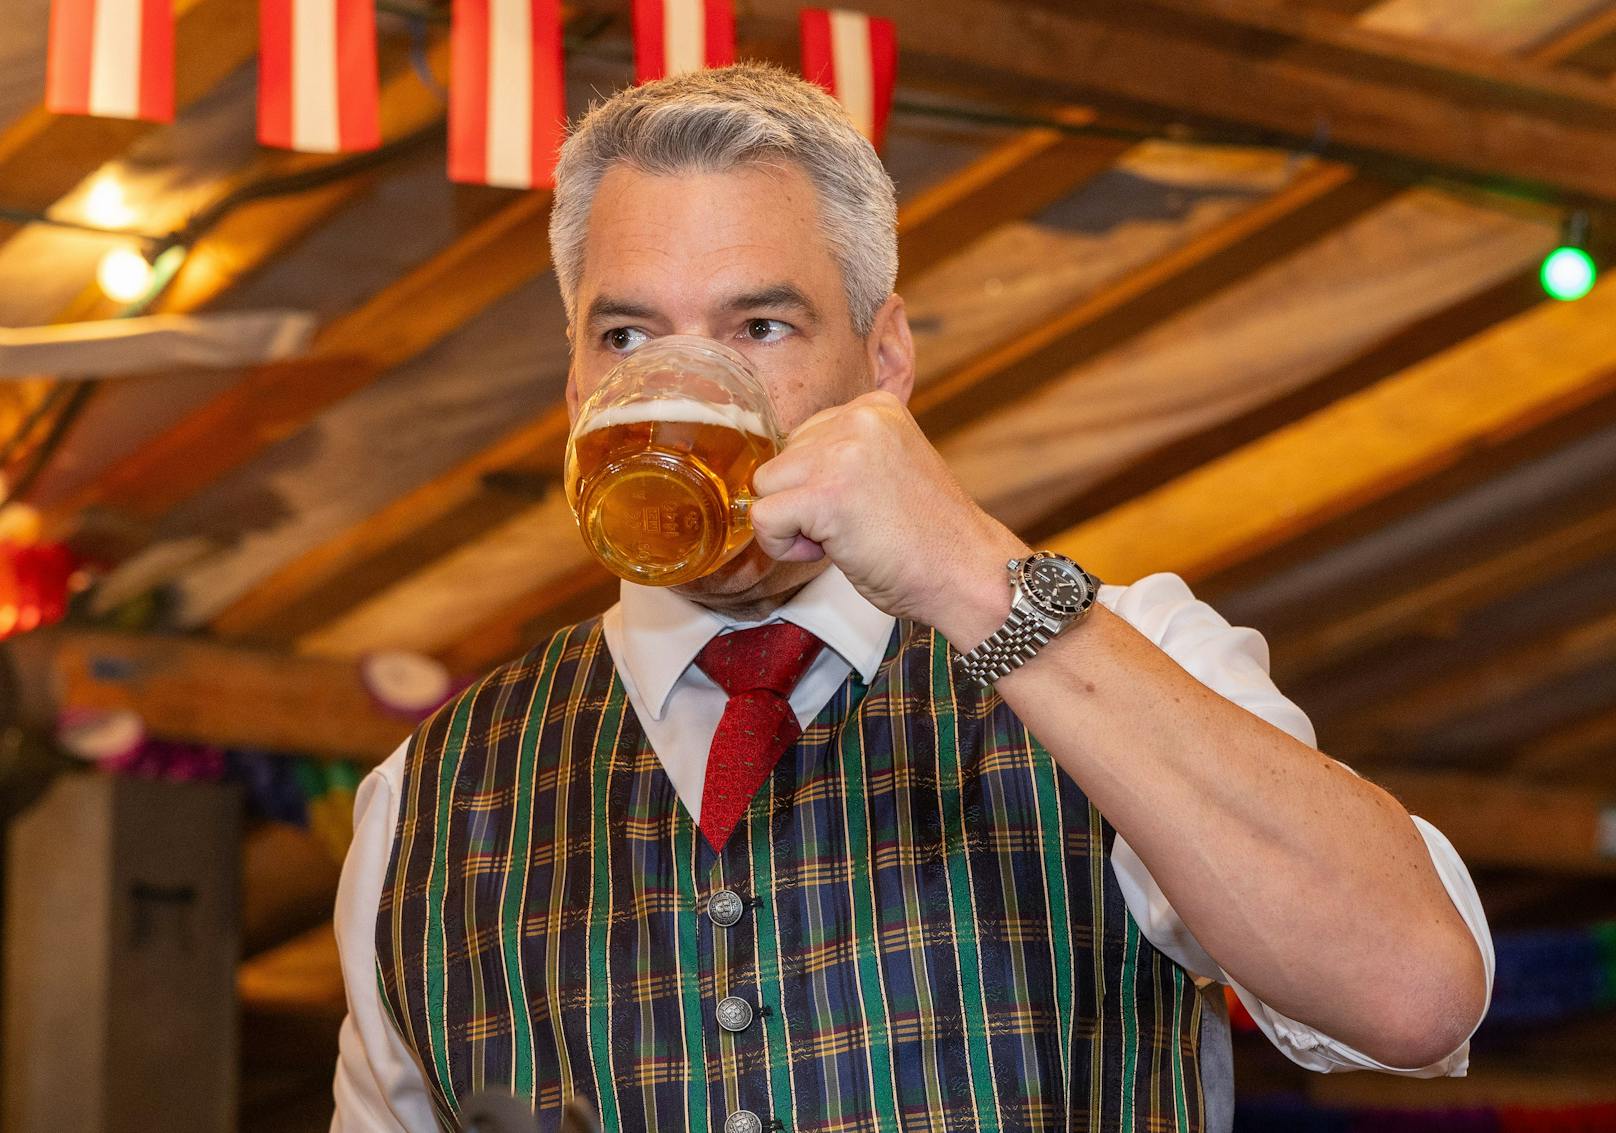 Jetzt kommt raus: Kanzler trank Fake-Bier auf Ex